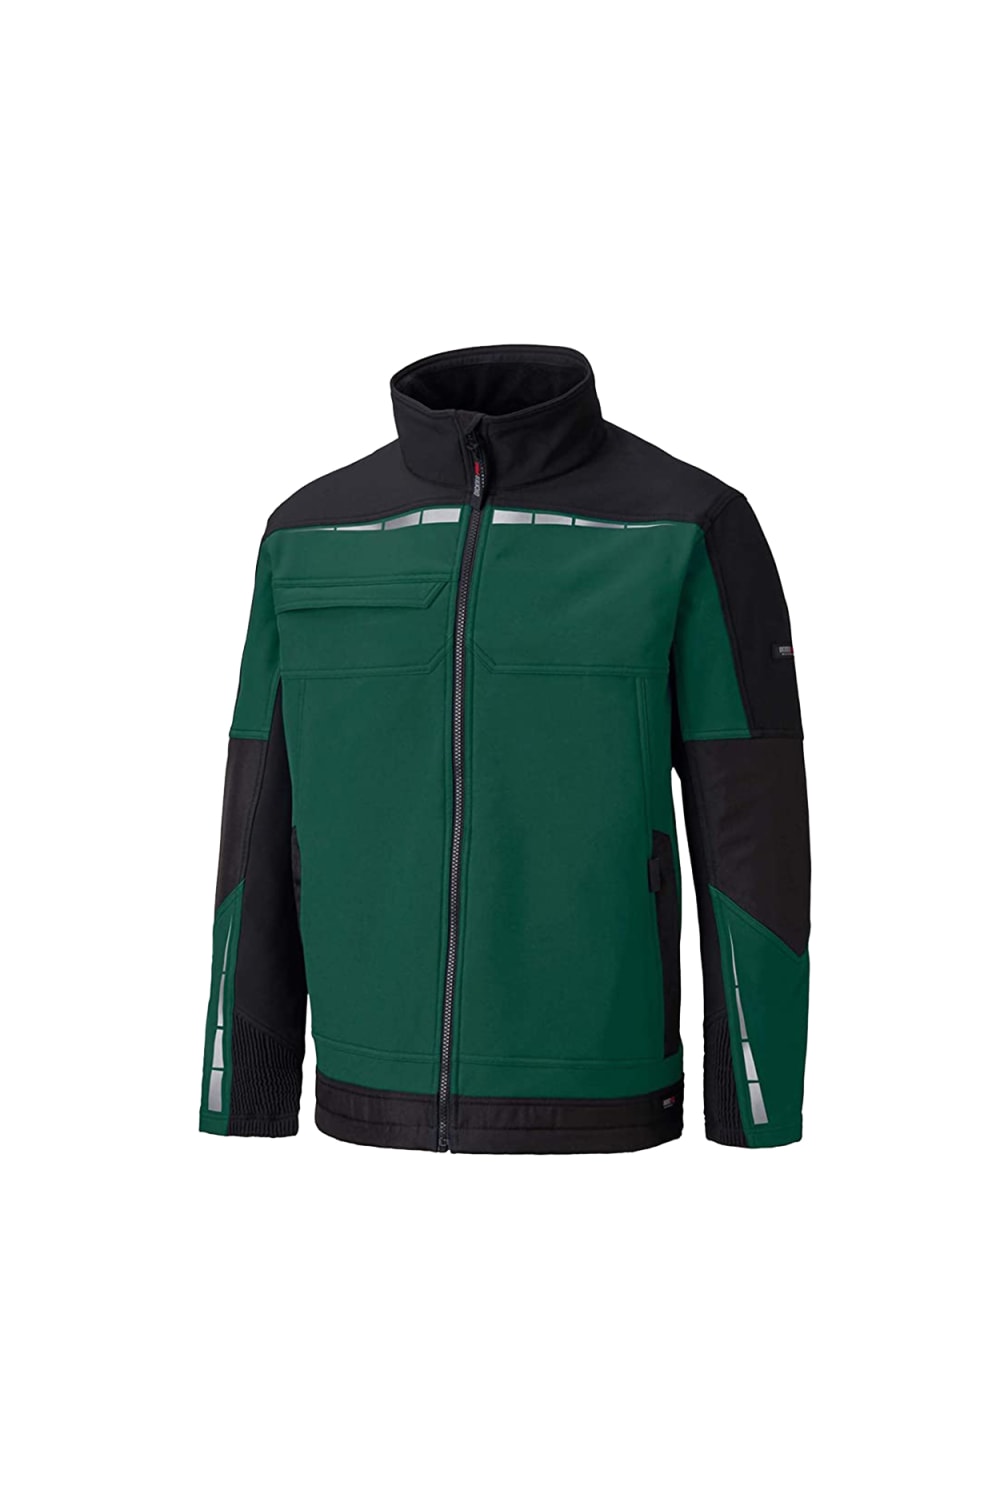 Dickies Mens Pro Jacket (Green/Black)